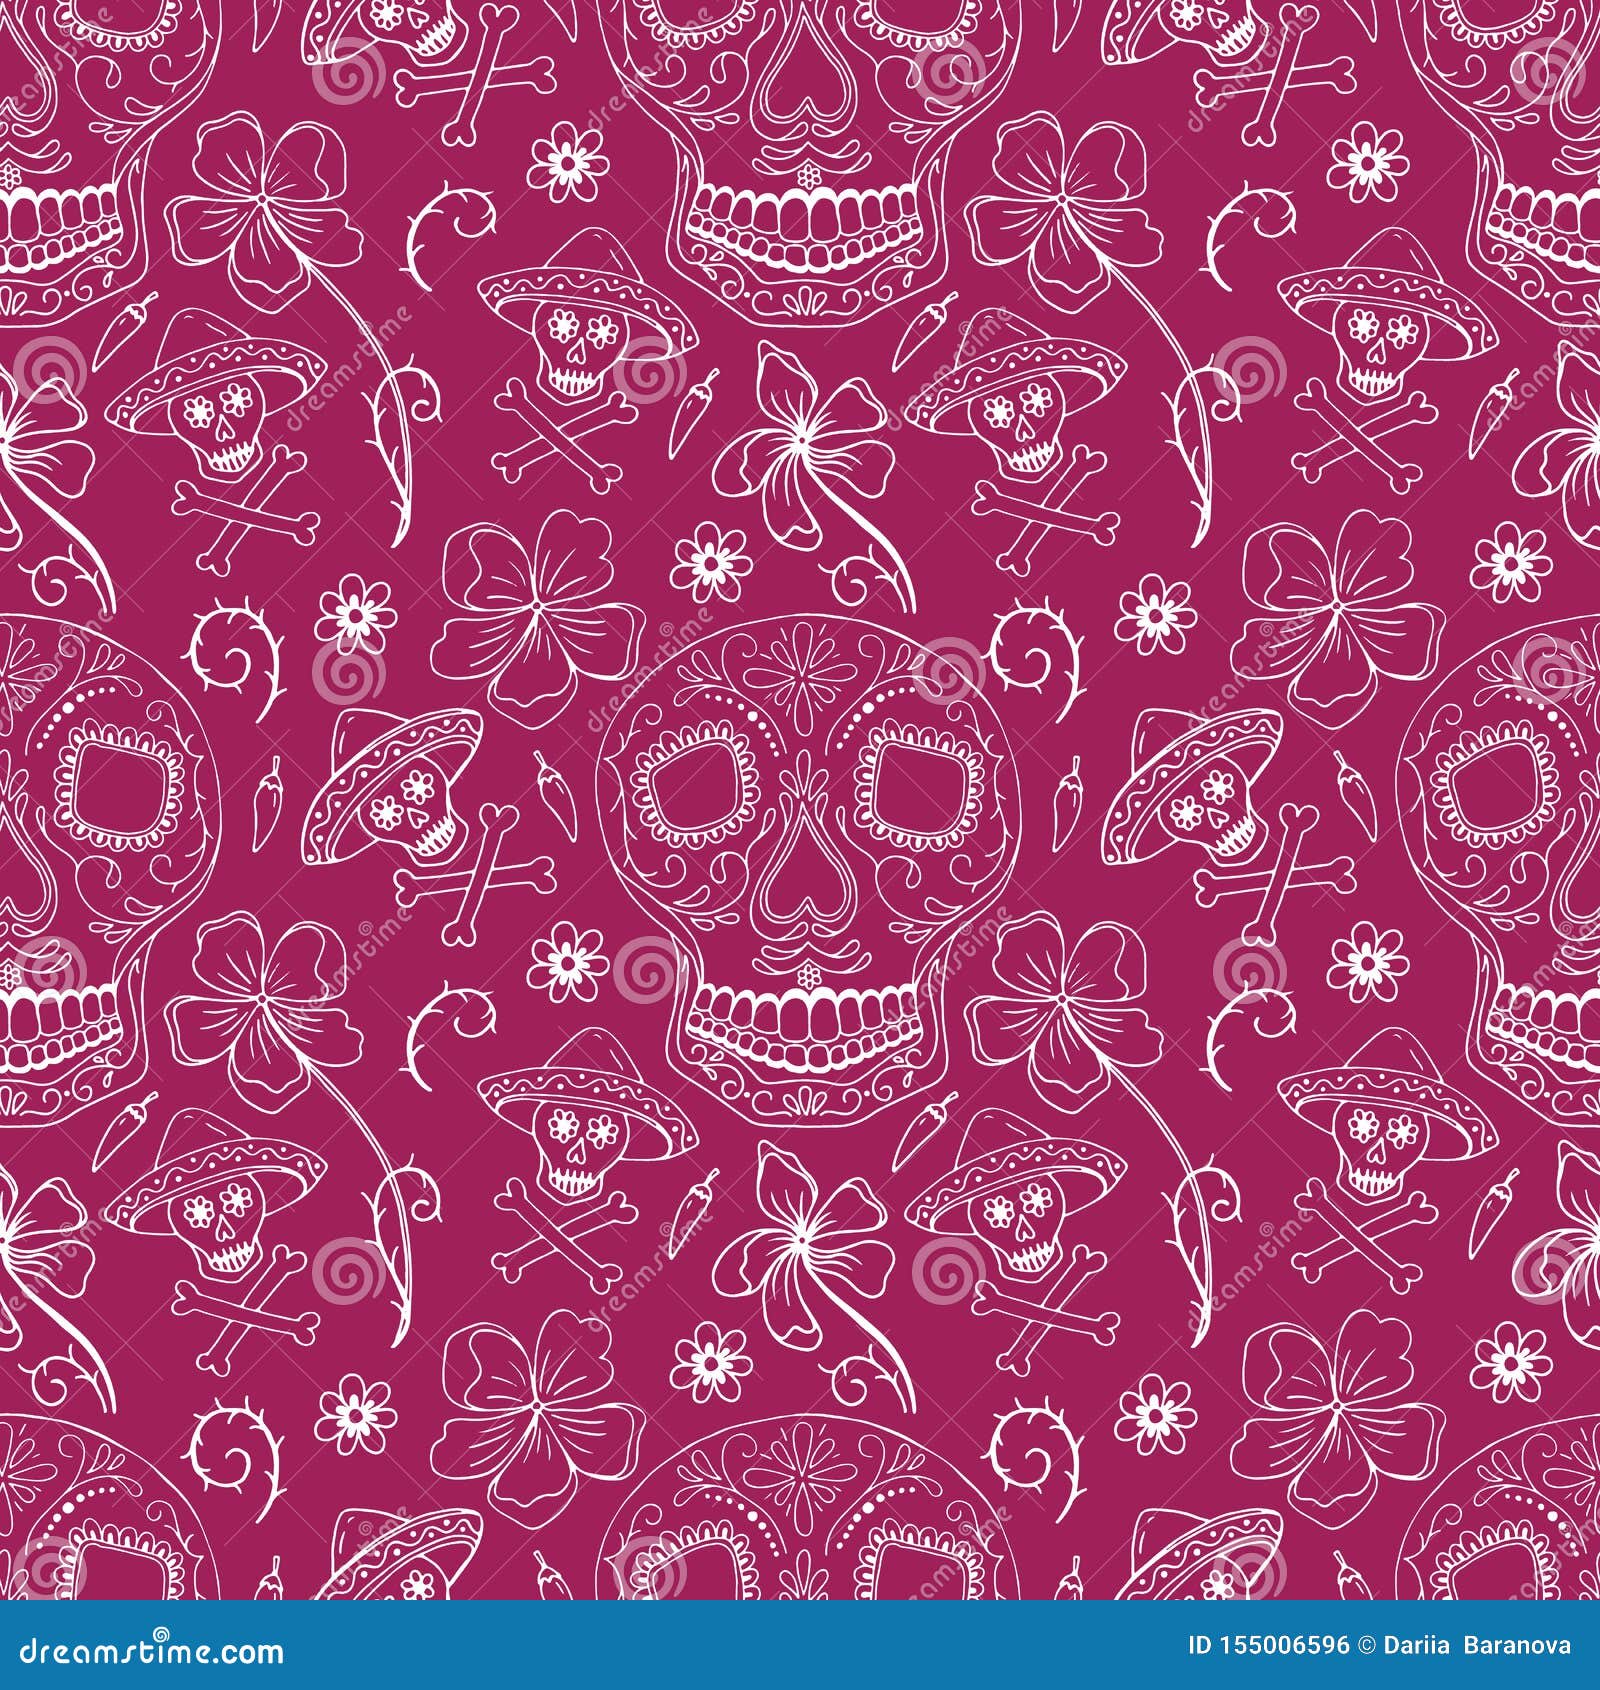 Free download Sugar skull Wallpapers in 2019 Sugar skull wallpaper Skull  606x1136 for your Desktop Mobile  Tablet  Explore 33 Day Of The Dead Día  De Muertos Wallpapers  Wallpaper Of